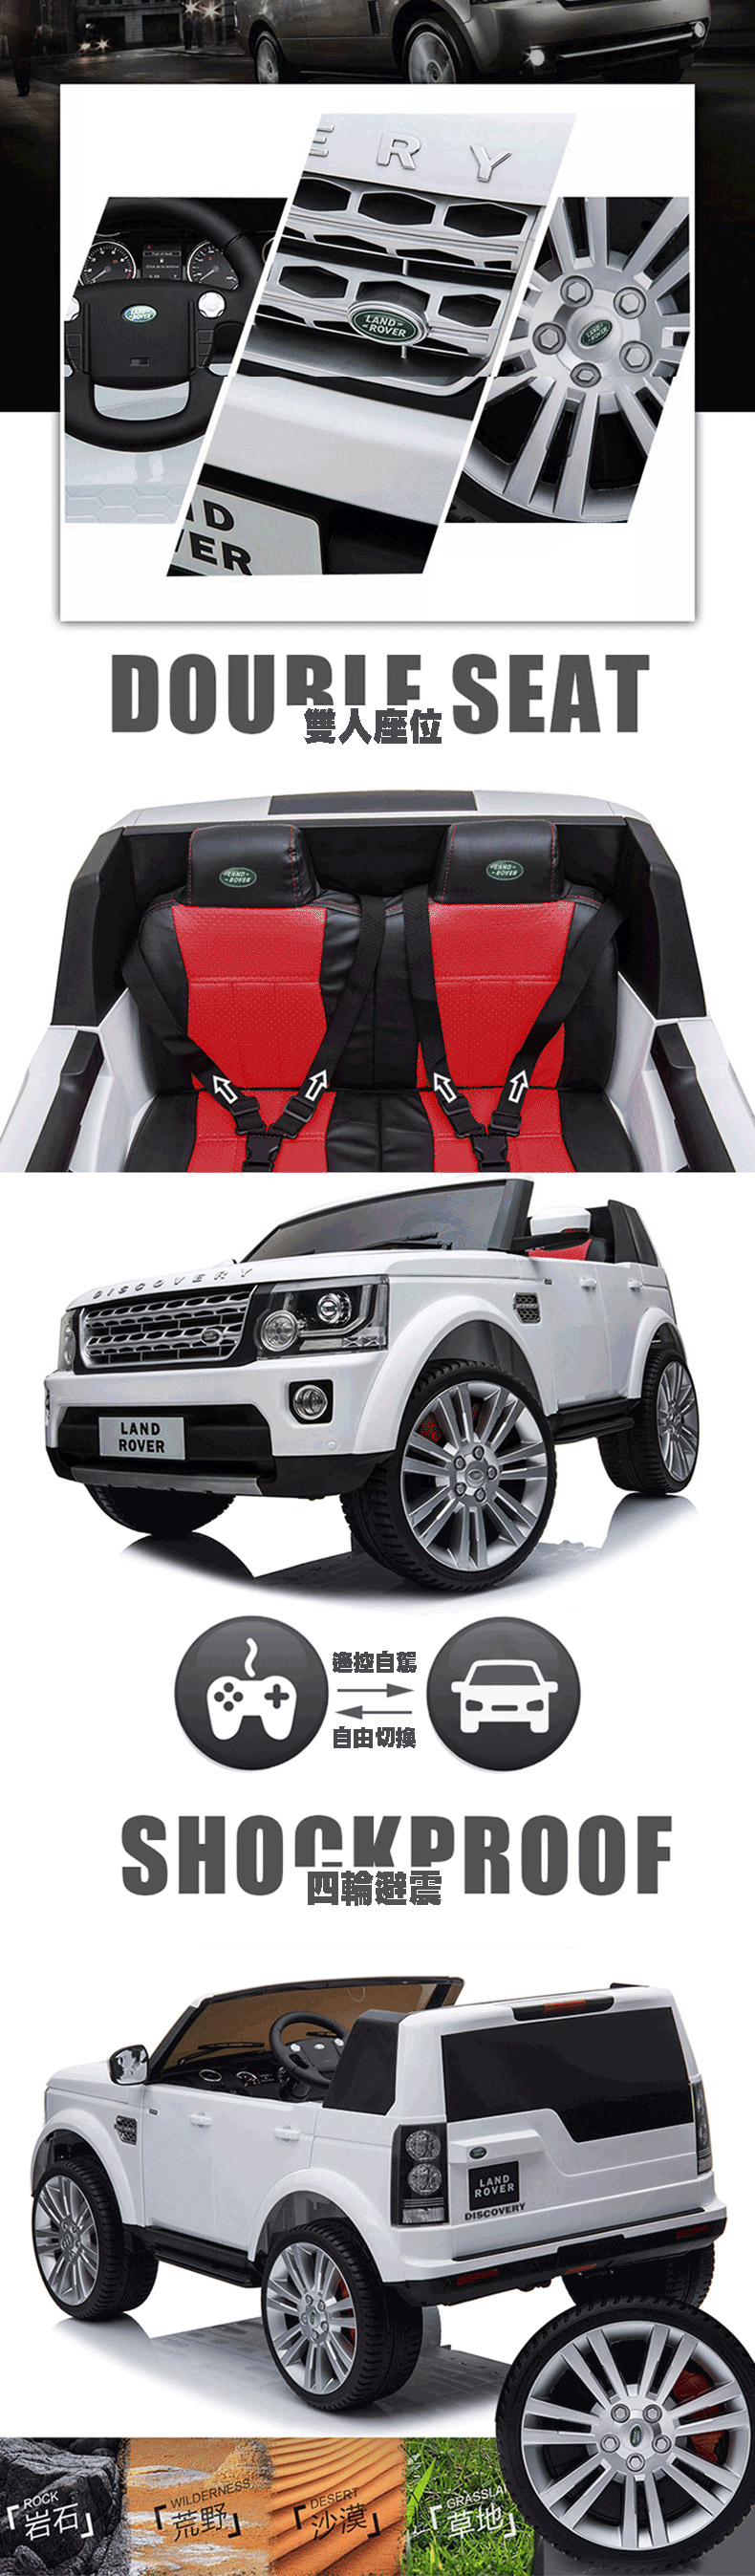 [原廠 Land Rover 授權] Discovery 24V 雙驅雙座兒童電動車